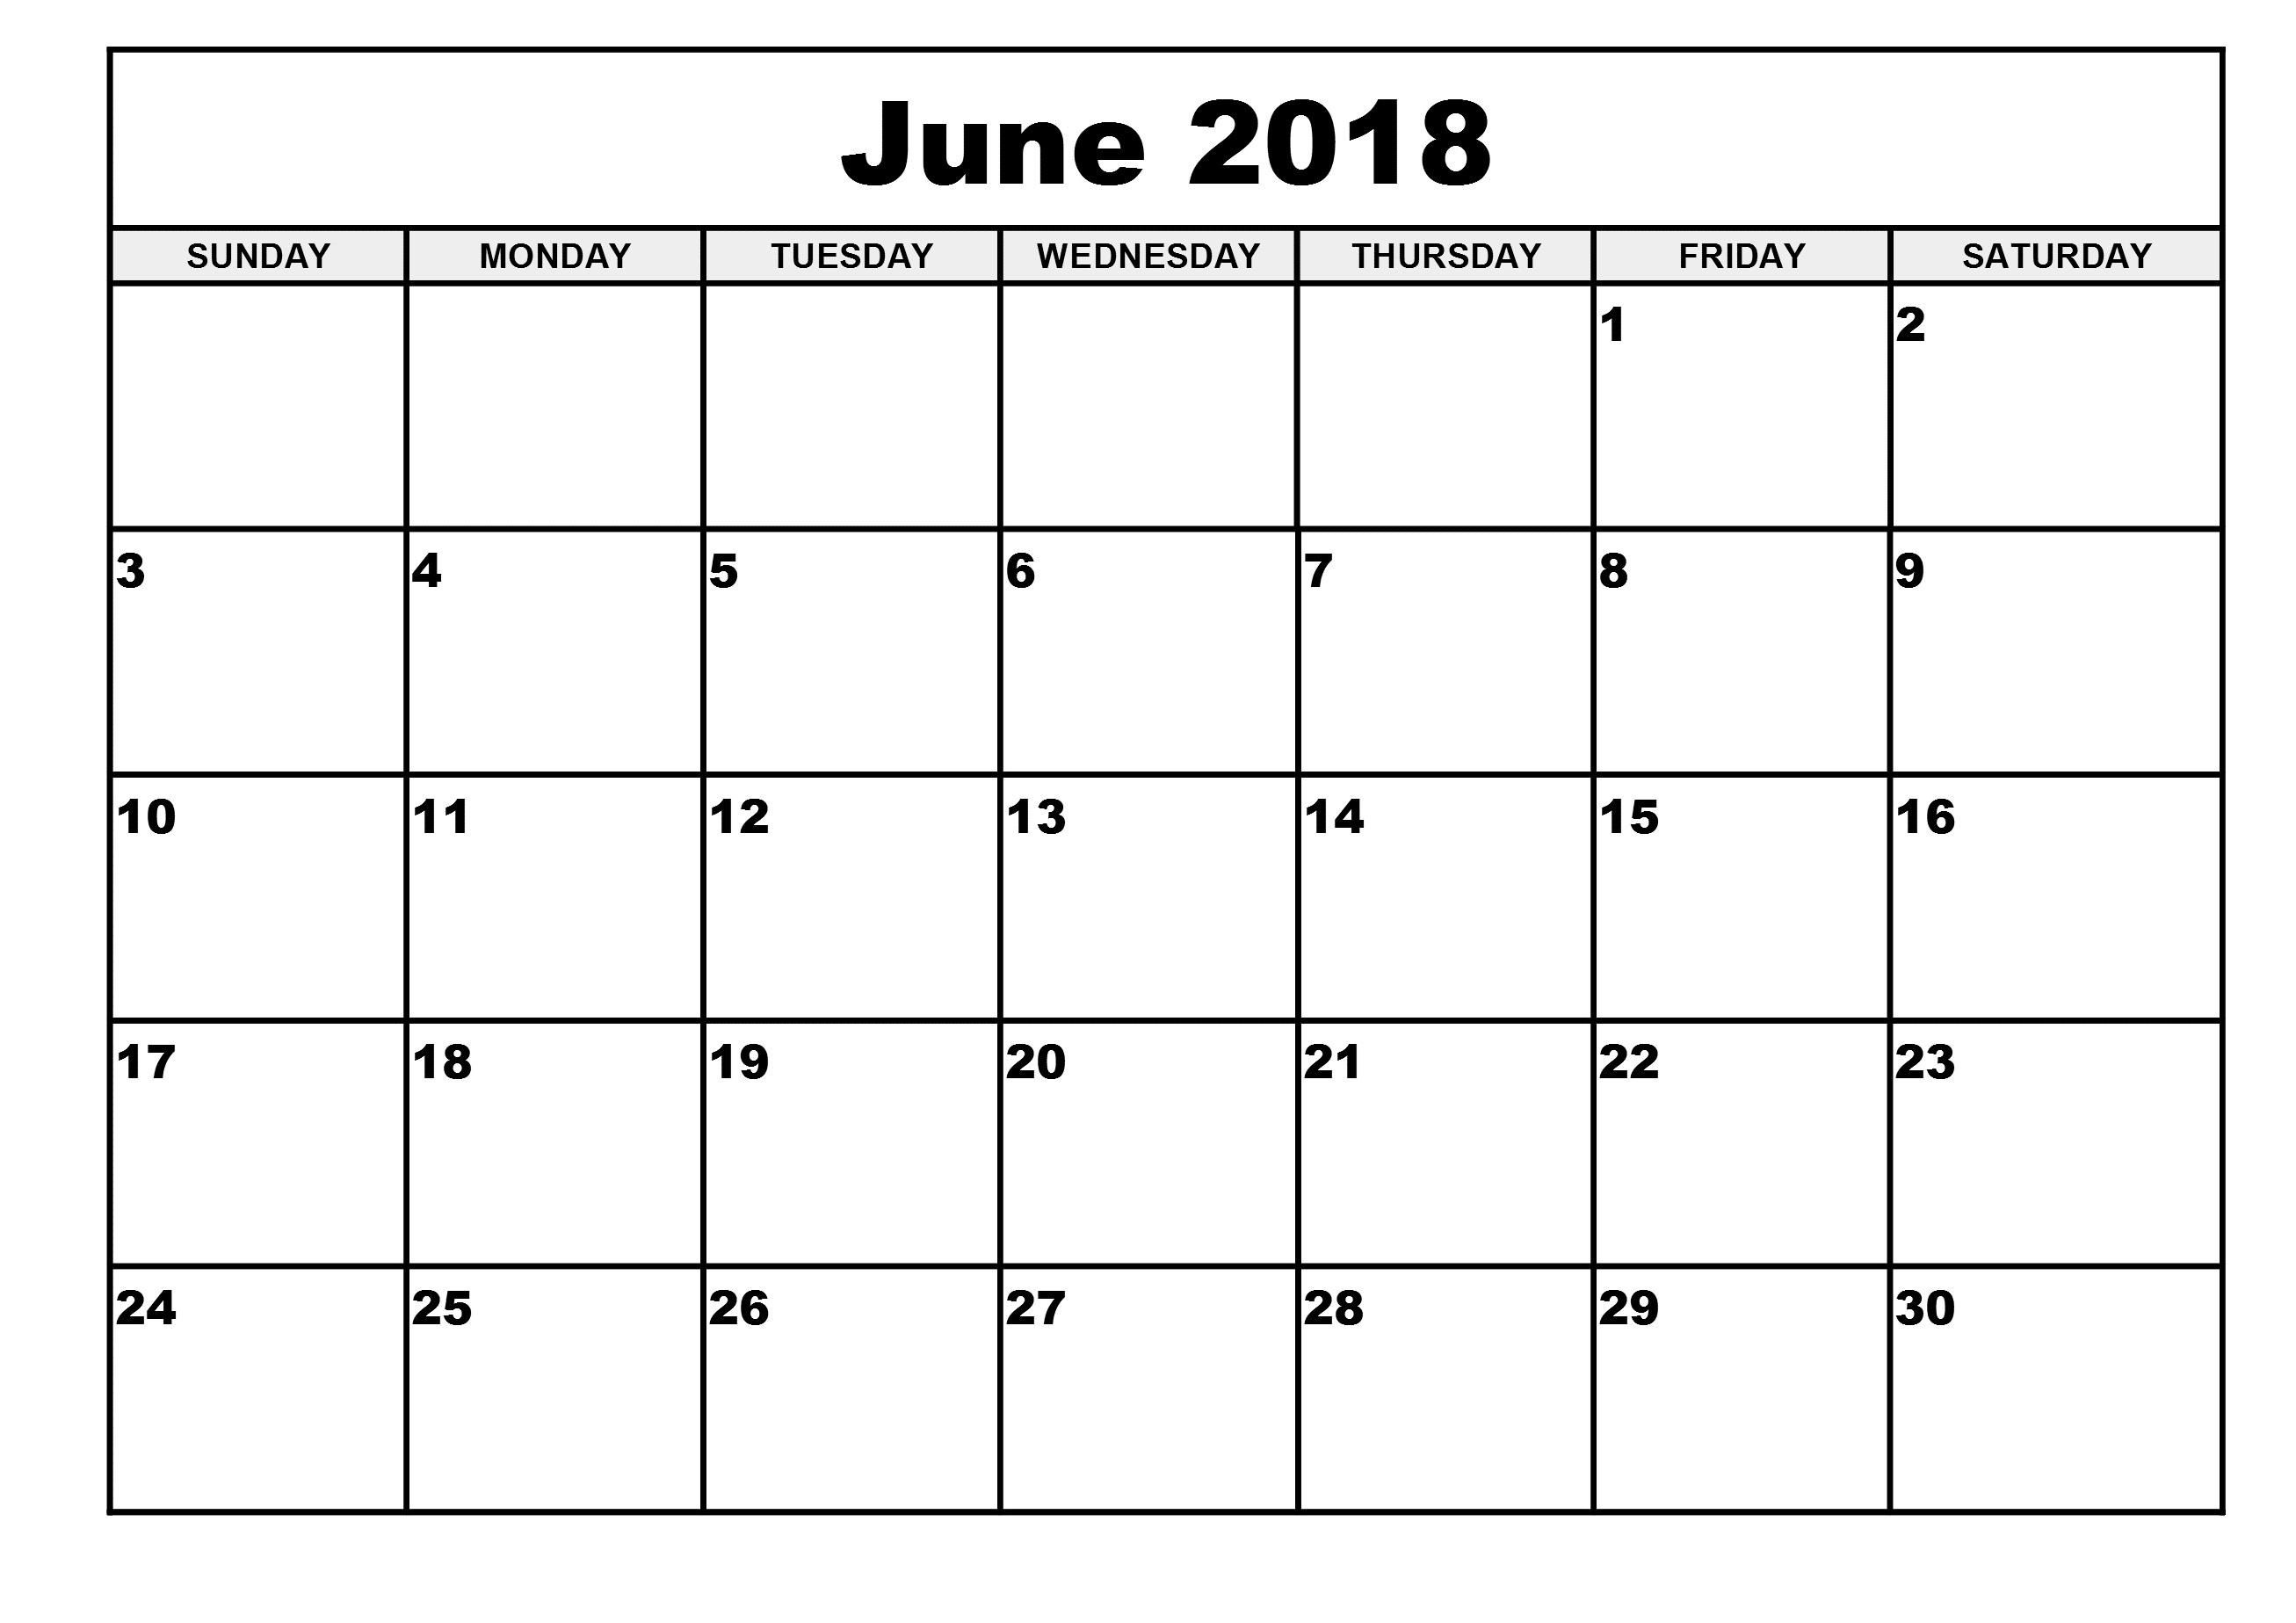 Http://Zhonggdjw/2018-June-Calendar.html 2018 June Free Calendar Html Template